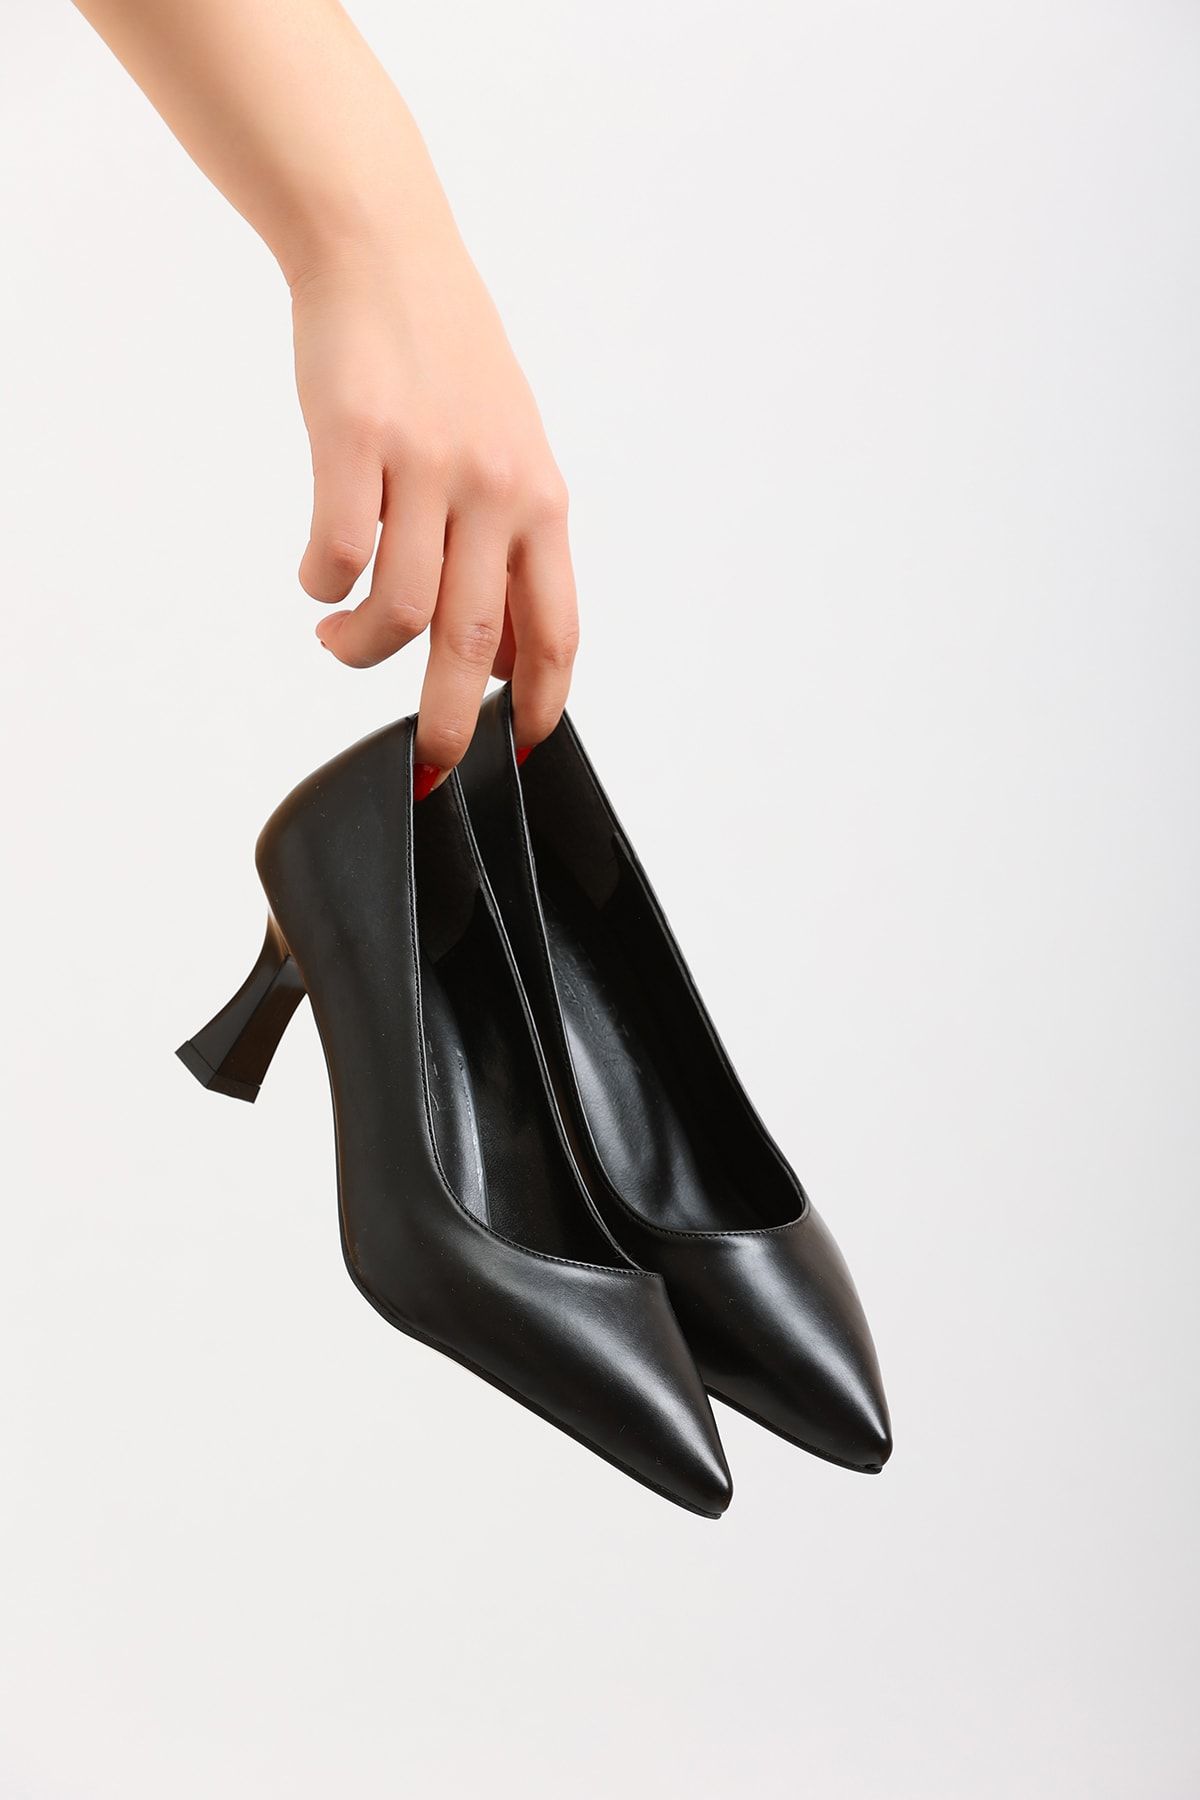 eformoda by emre yılmaz Siyah Cilt Kadın Klasik Topuklu Ayakkabı 0002